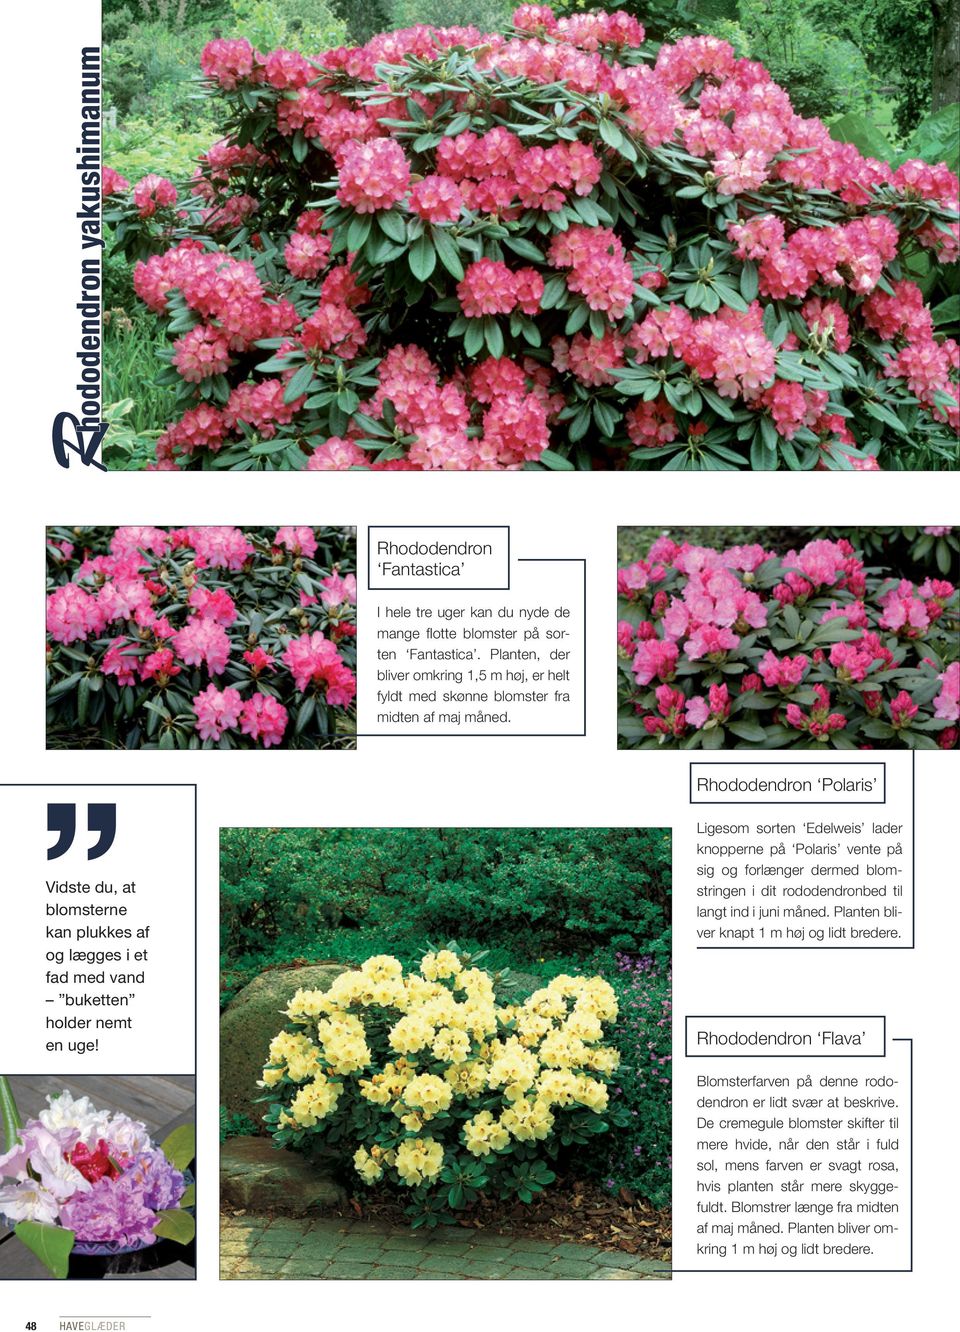 Rhododendron Polaris Ligesom sorten Edelweis lader knopperne på Polaris vente på sig og forlænger dermed blomstringen i dit rododendronbed til langt ind i juni måned.